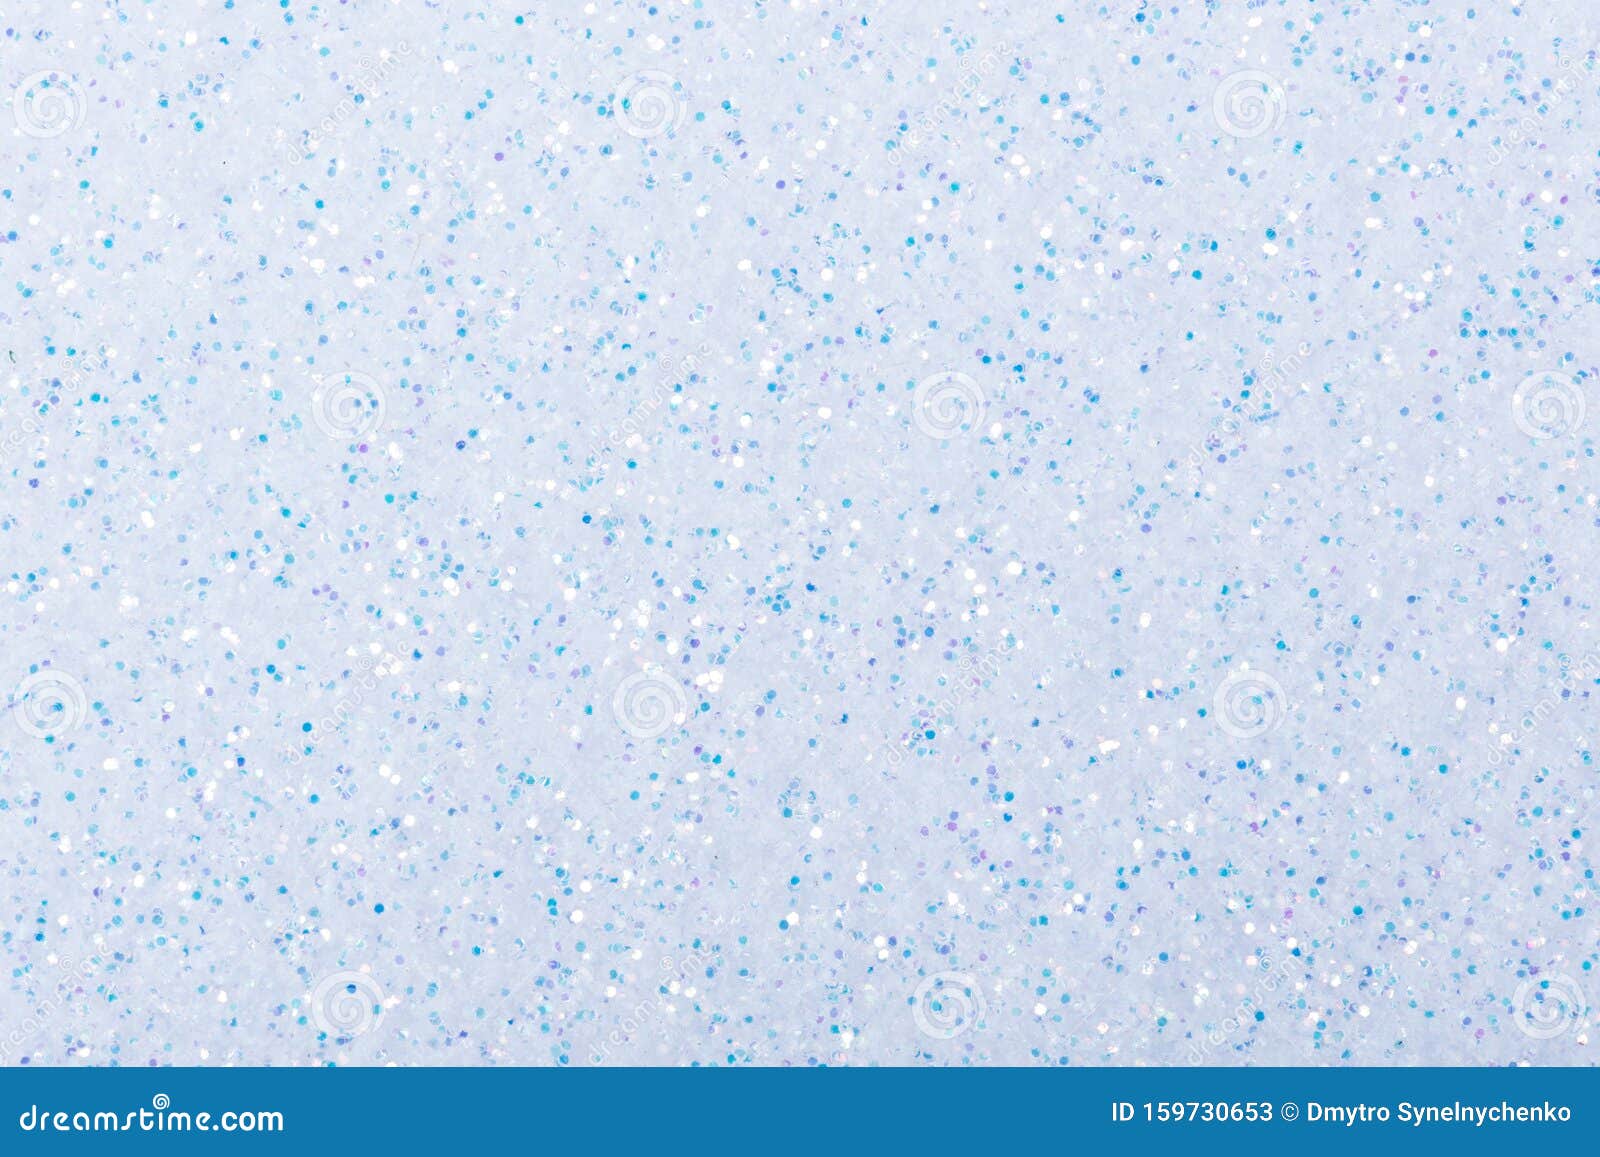 Nền máy tính của bạn sẽ trông cực kì thú vị với hình nền Light Blue Holographic Glitter Background. Sự kết hợp giữa màu sắc và kết cấu bóng loáng sẽ đem đến một cái nhìn mới lạ cho chiếc máy tính của bạn.